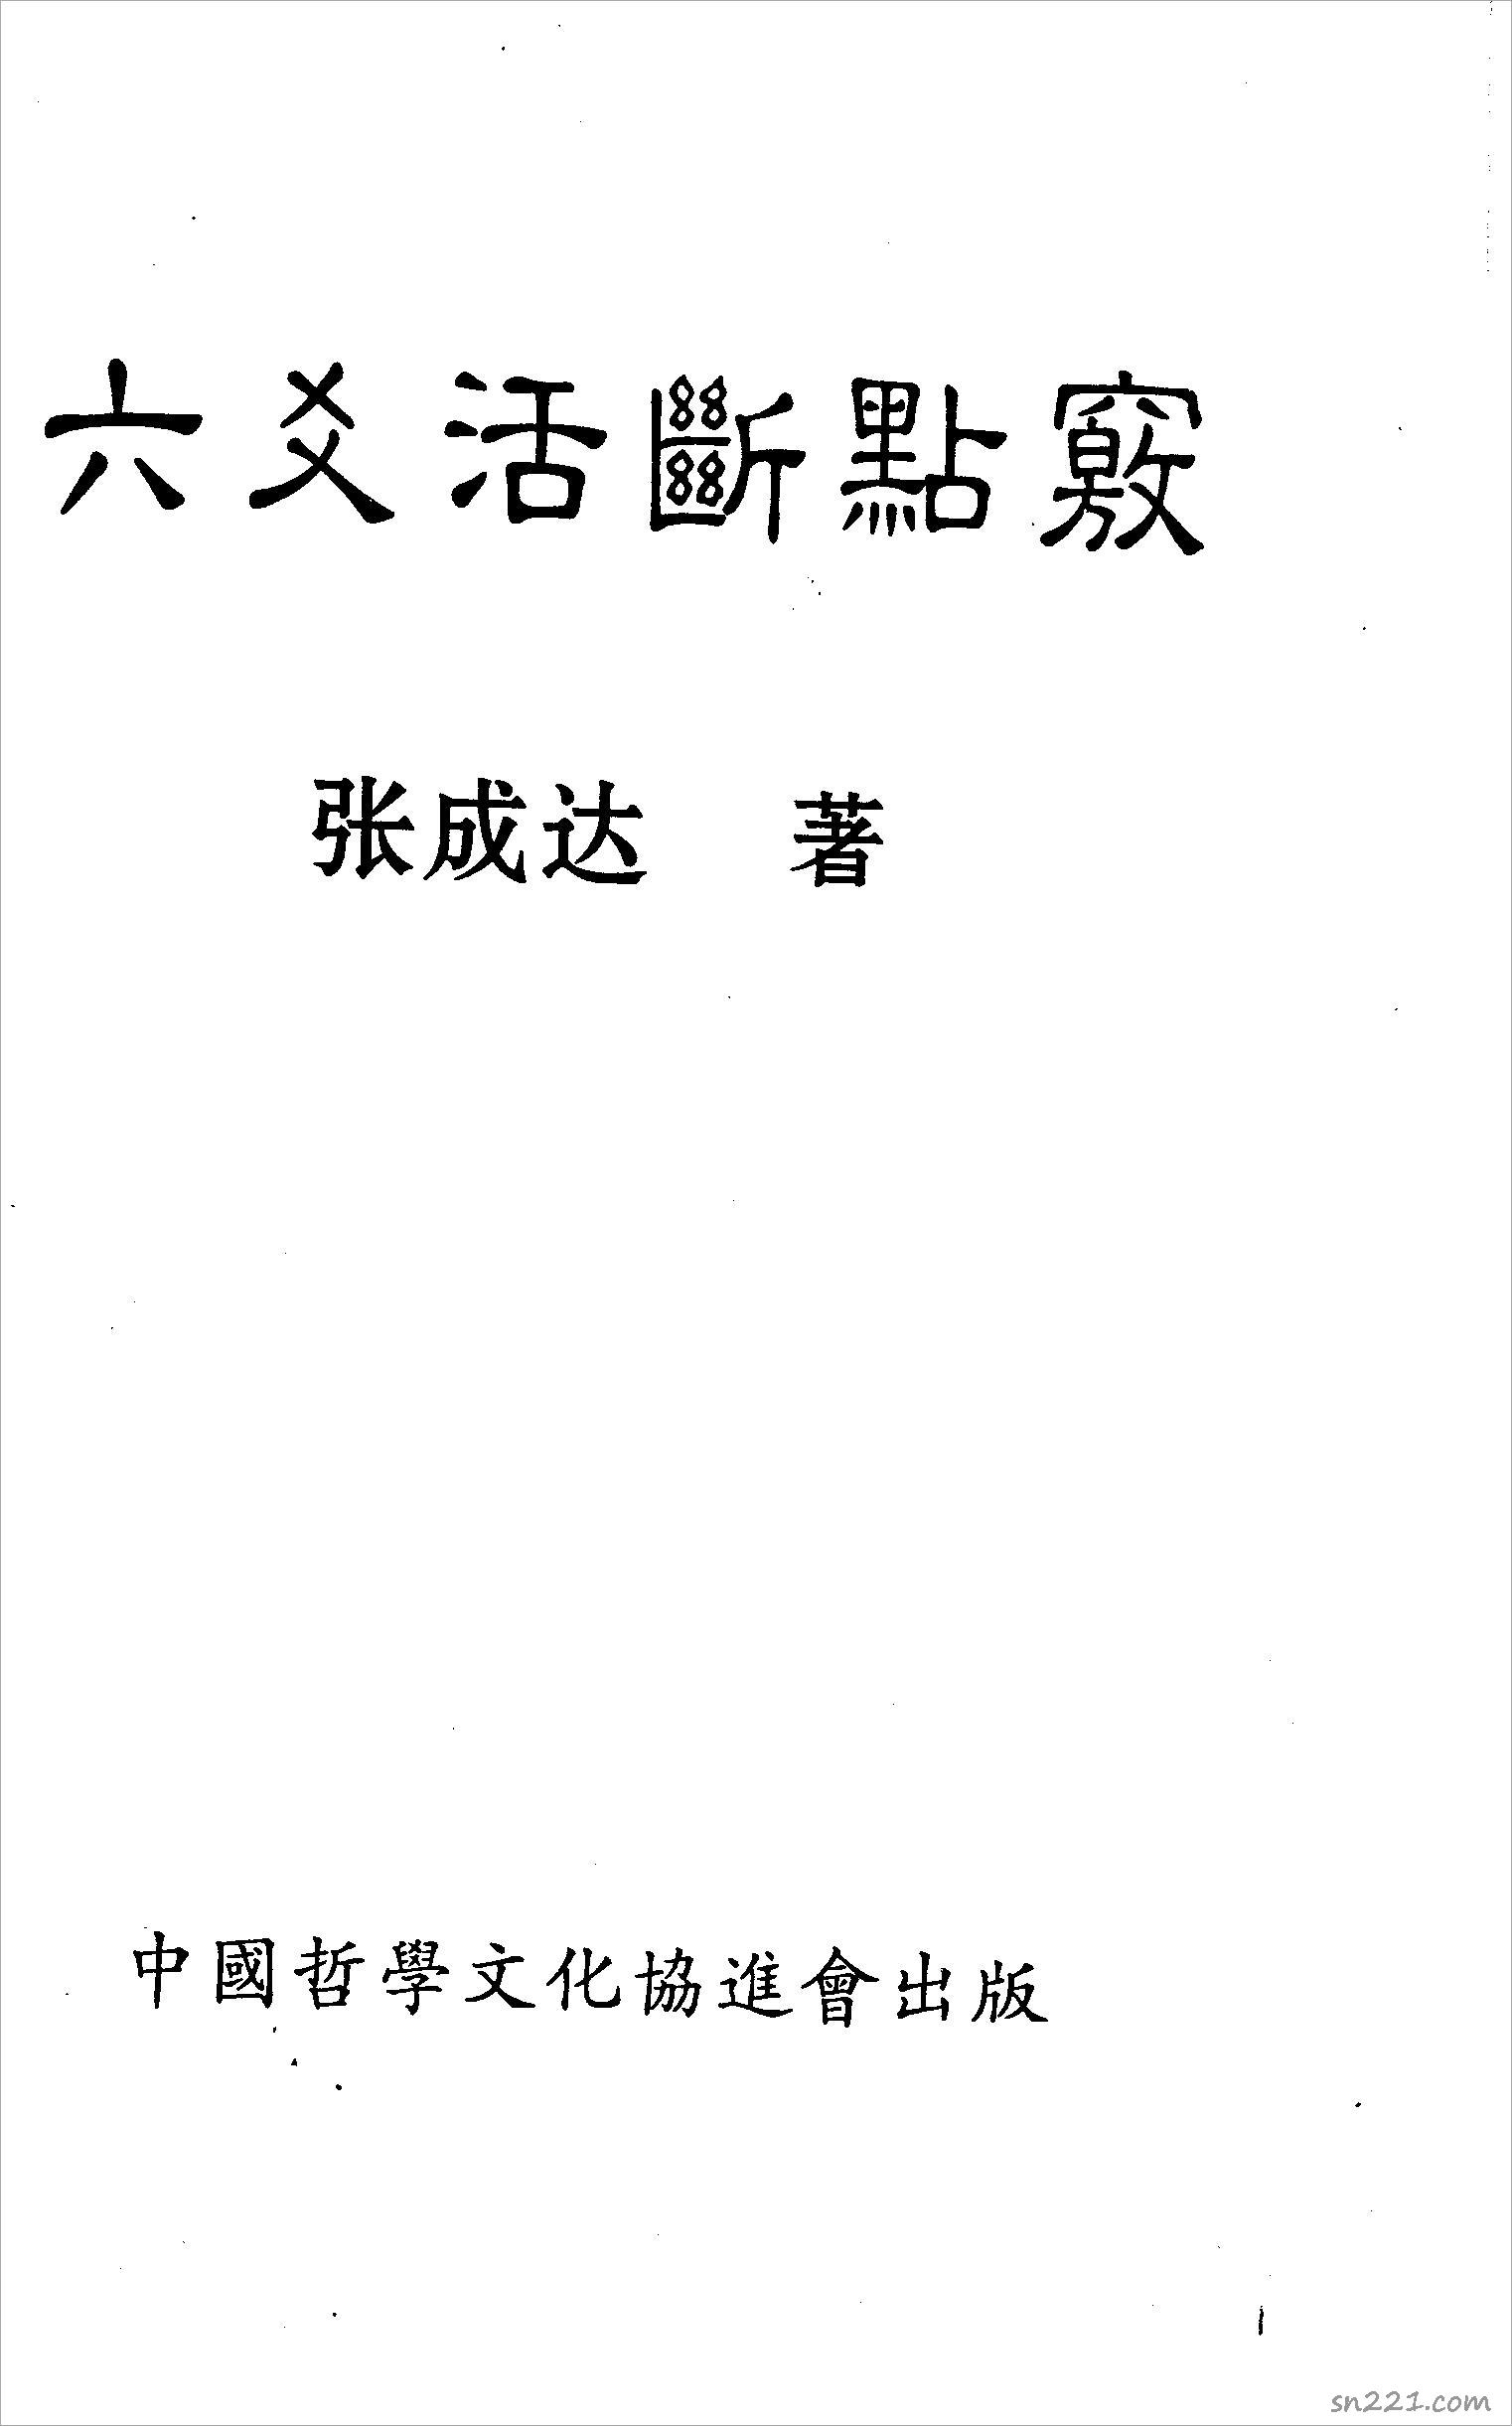 張成達-六爻活斷點竅.pdf